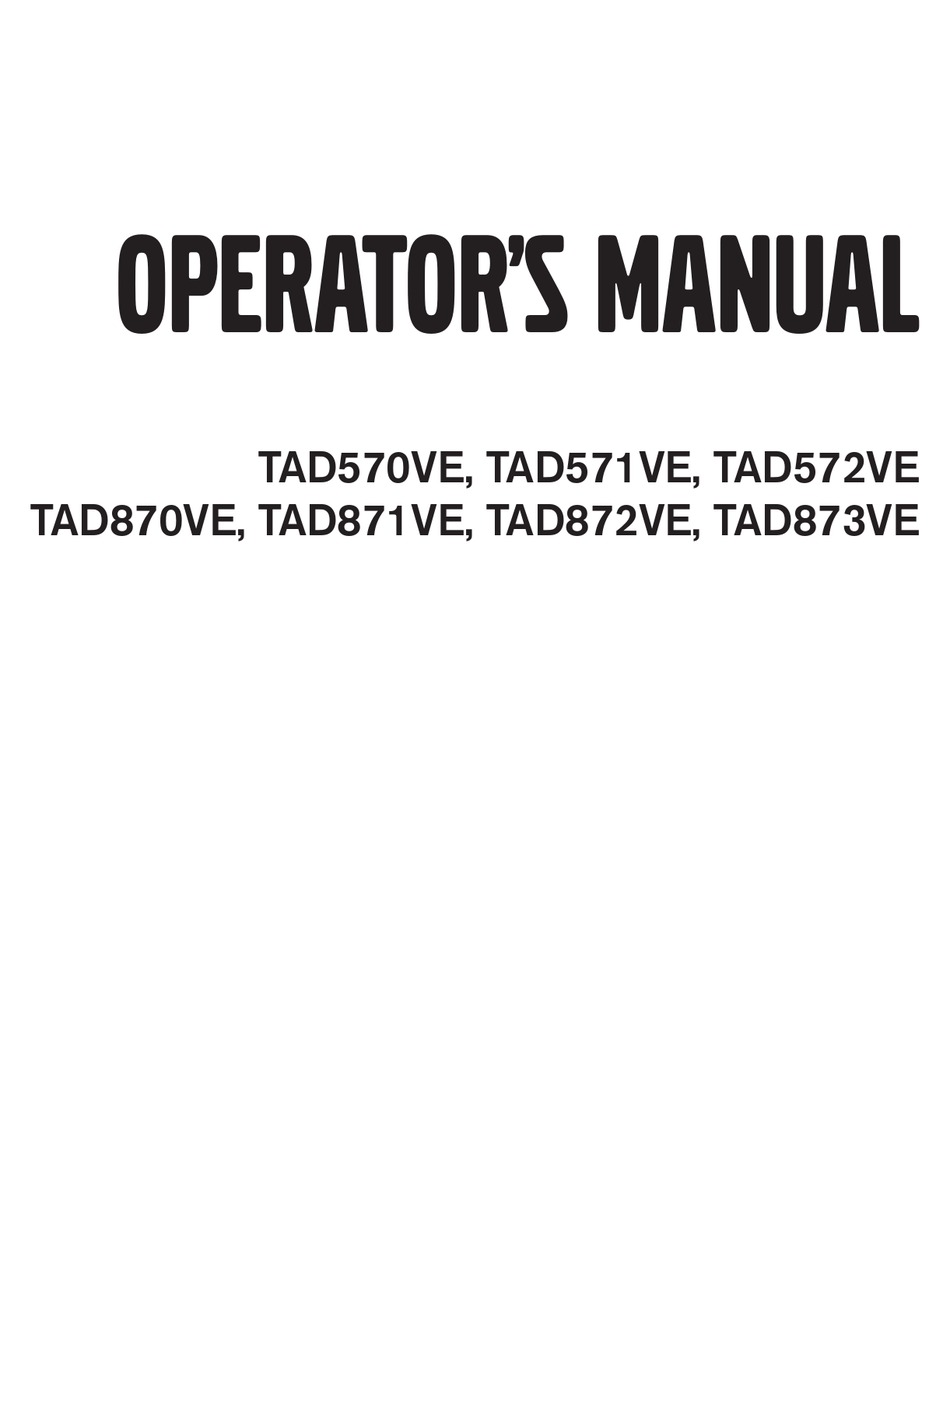 VOLVO PENTA TAD570VE OPERATOR'S MANUAL Pdf Download | ManualsLib